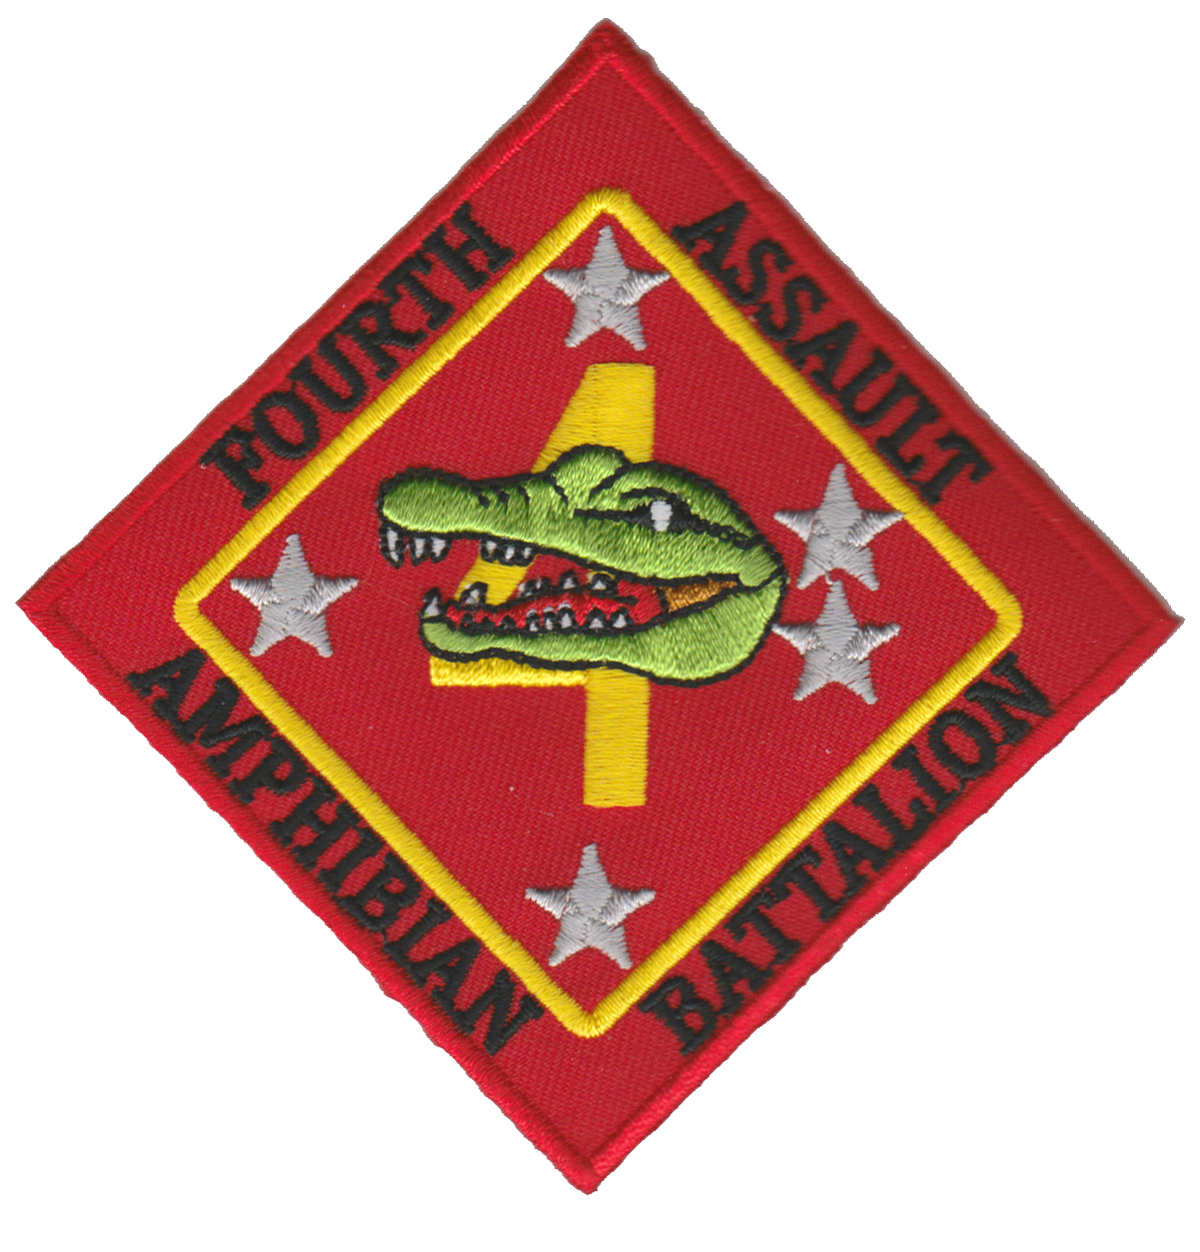 4th Amphibian Assault Battalion USMC Patch